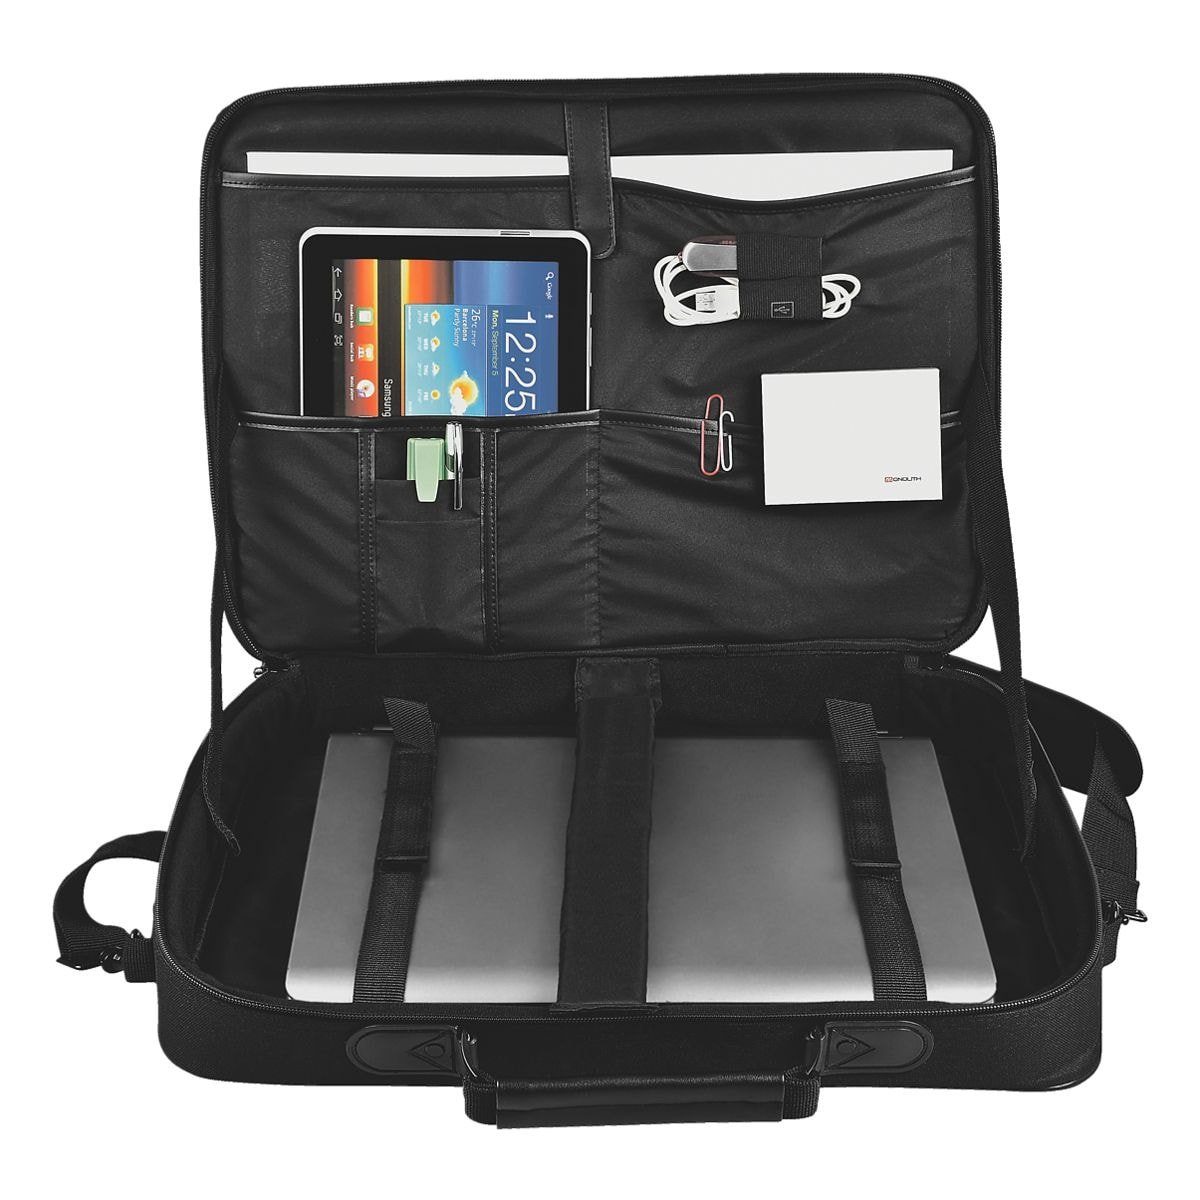 MONOLITH Laptoptasche, 15,6", Laptopfach mit gepolstertem vollständig